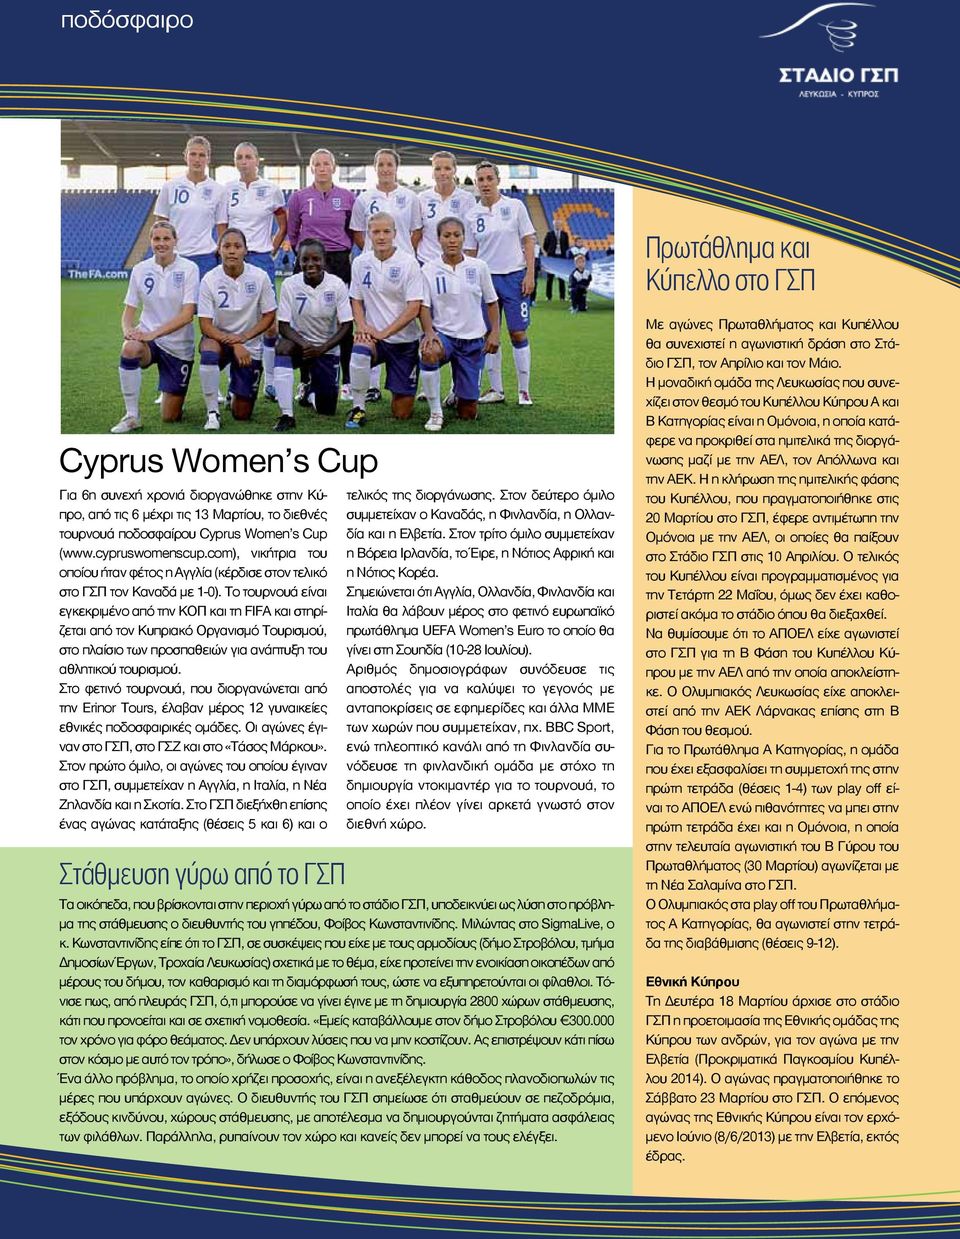 Το τουρνουά είναι εγκεκριμένο από την ΚΟΠ και τη FIFA και στηρίζεται από τον Κυπριακό Οργανισμό Τουρισμού, στο πλαίσιο των προσπαθειών για ανάπτυξη του αθλητικού τουρισμού.